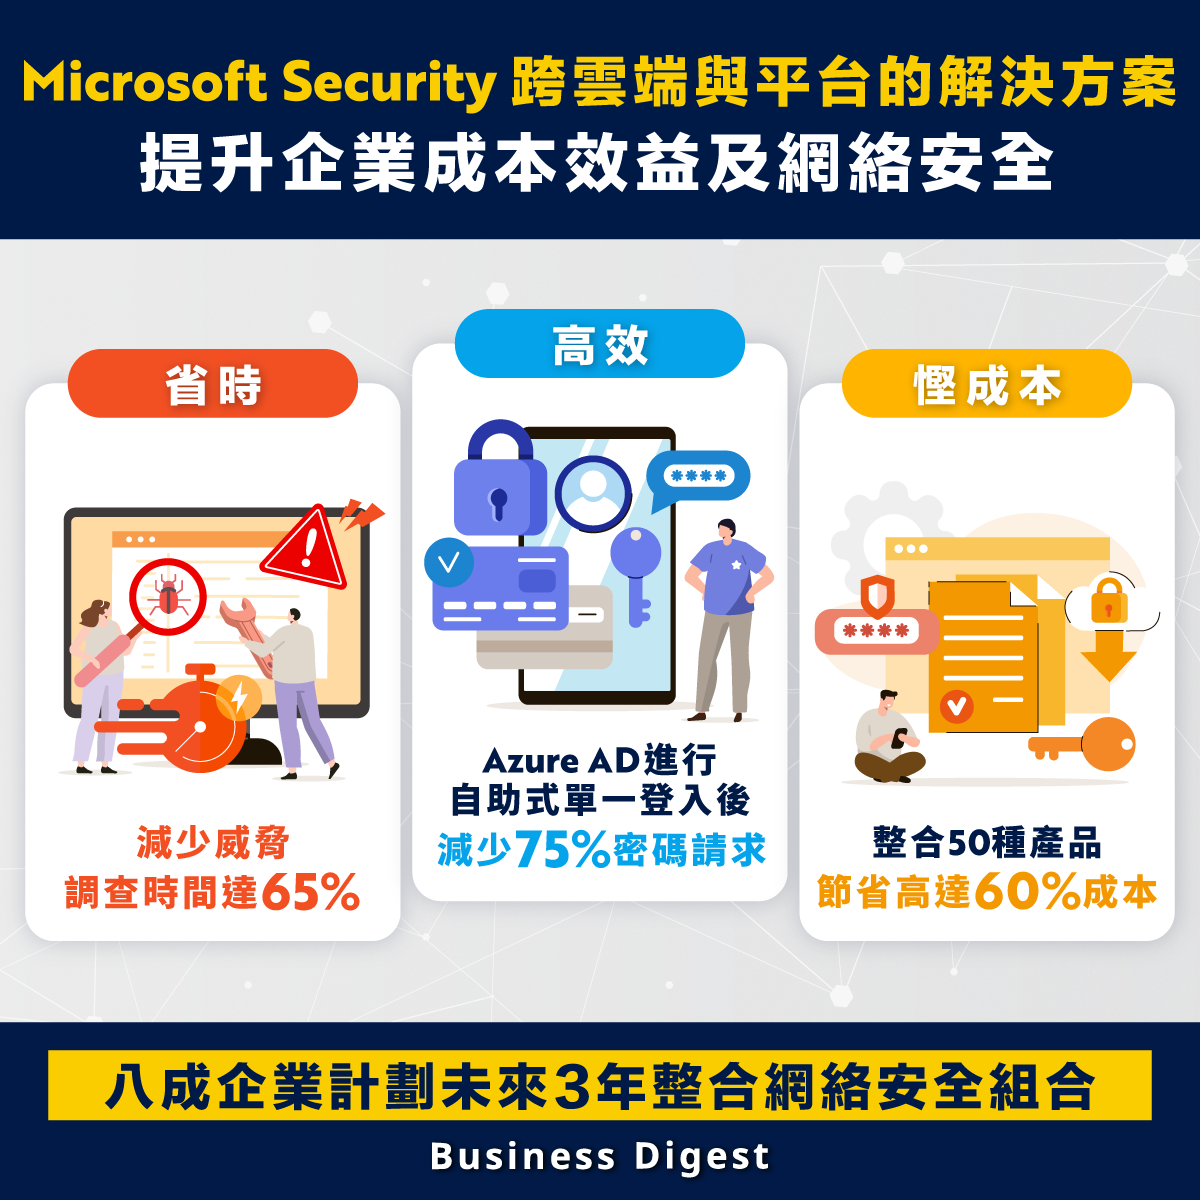 【#網絡安全】Microsoft Security跨雲端與平台的解決方案，提升企業成本效益及網絡安全